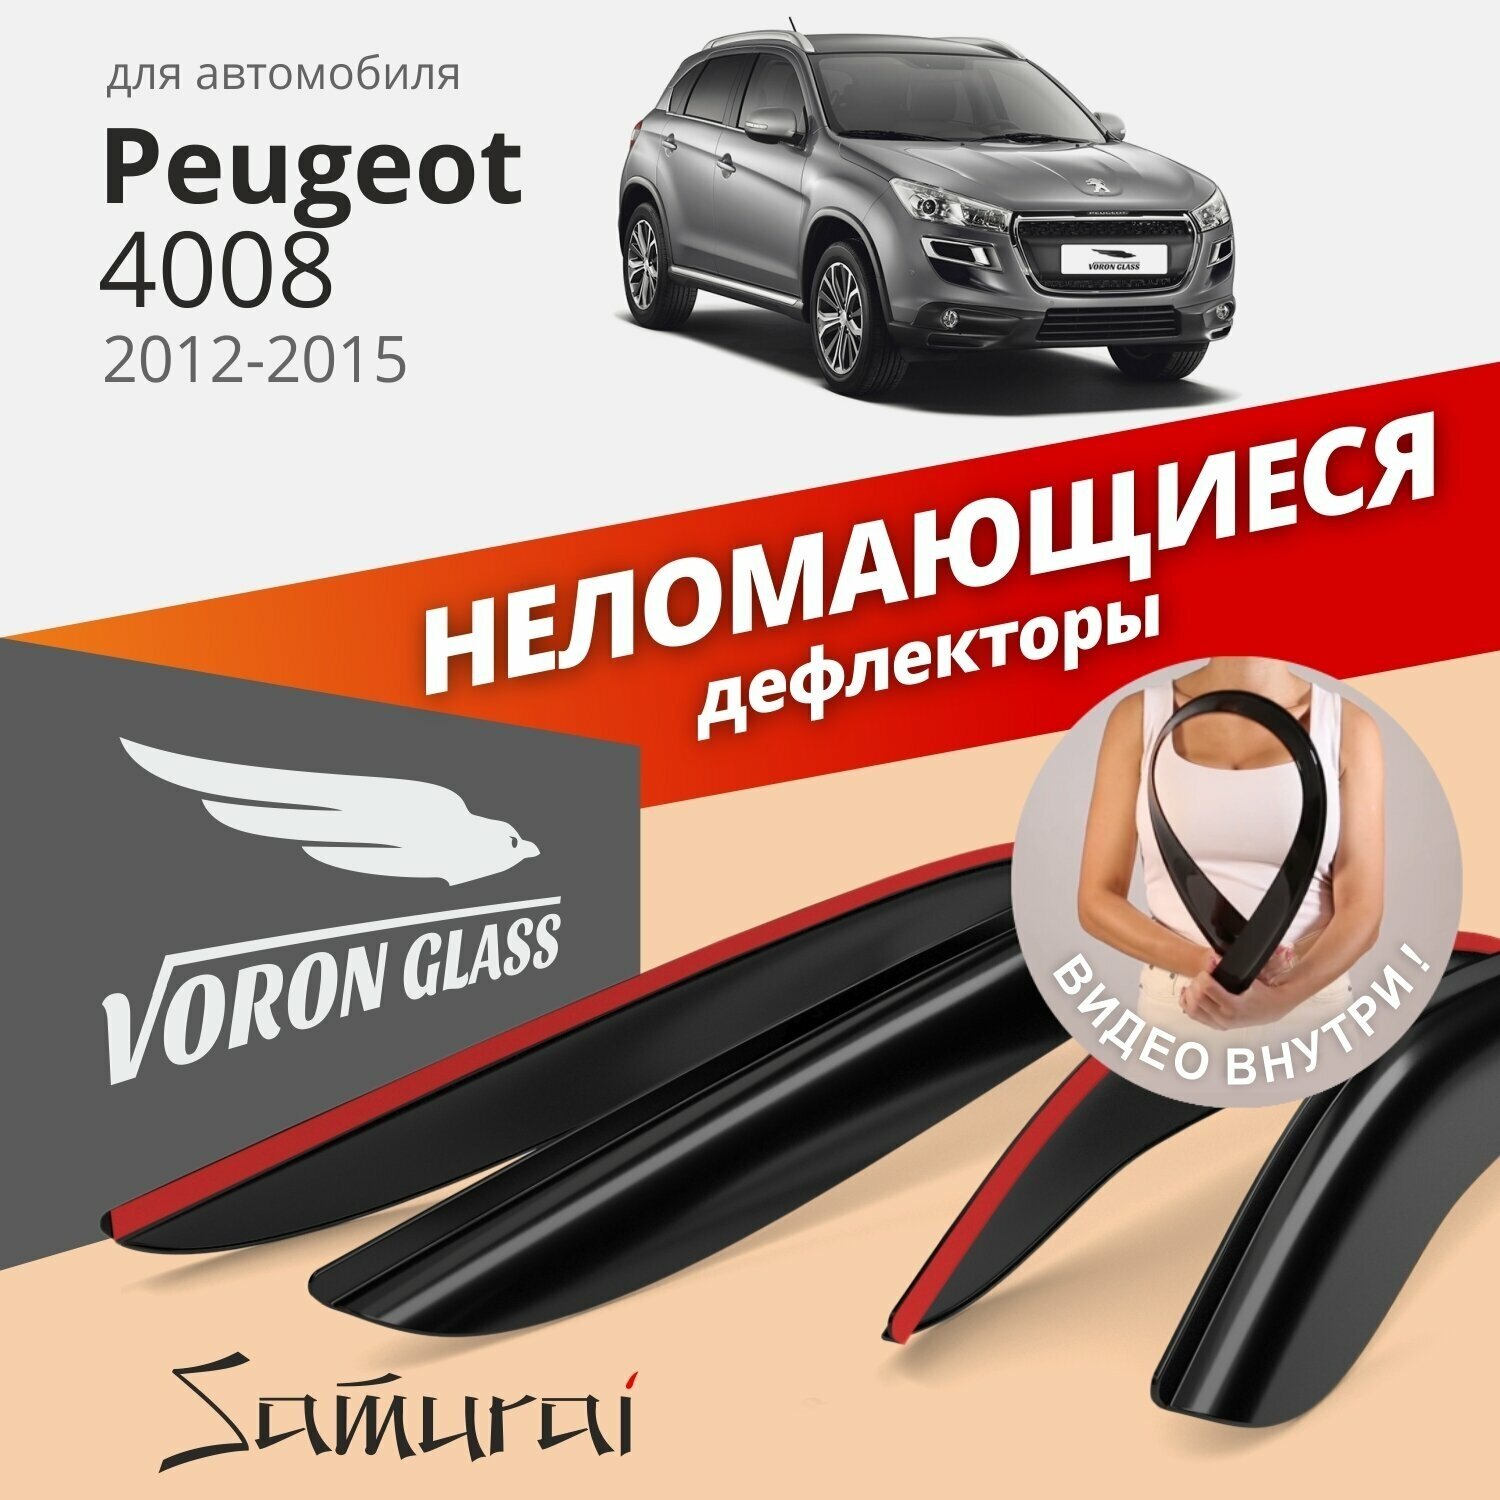 Дефлекторы окон неломающиеся Voron Glass серия Samurai для PEUGEOT 4008 2012 - 2015 накладные 4 шт.